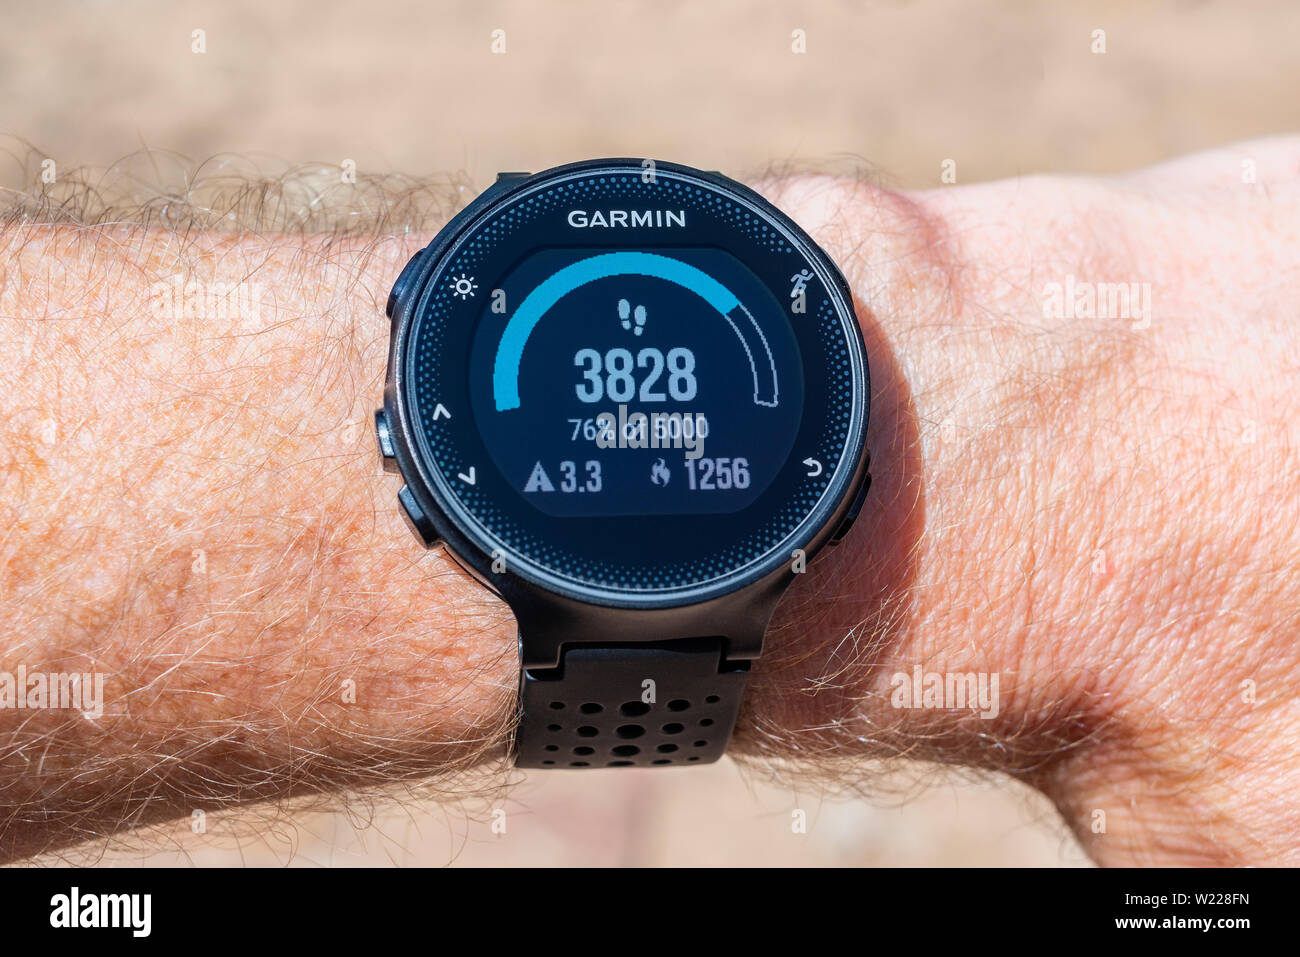 Garmin Reloj inteligente de pulsera masculino mostrando un contador de pasos, distancia recorrida en kilómetros y la cantidad de calorías quemadas Foto de stock